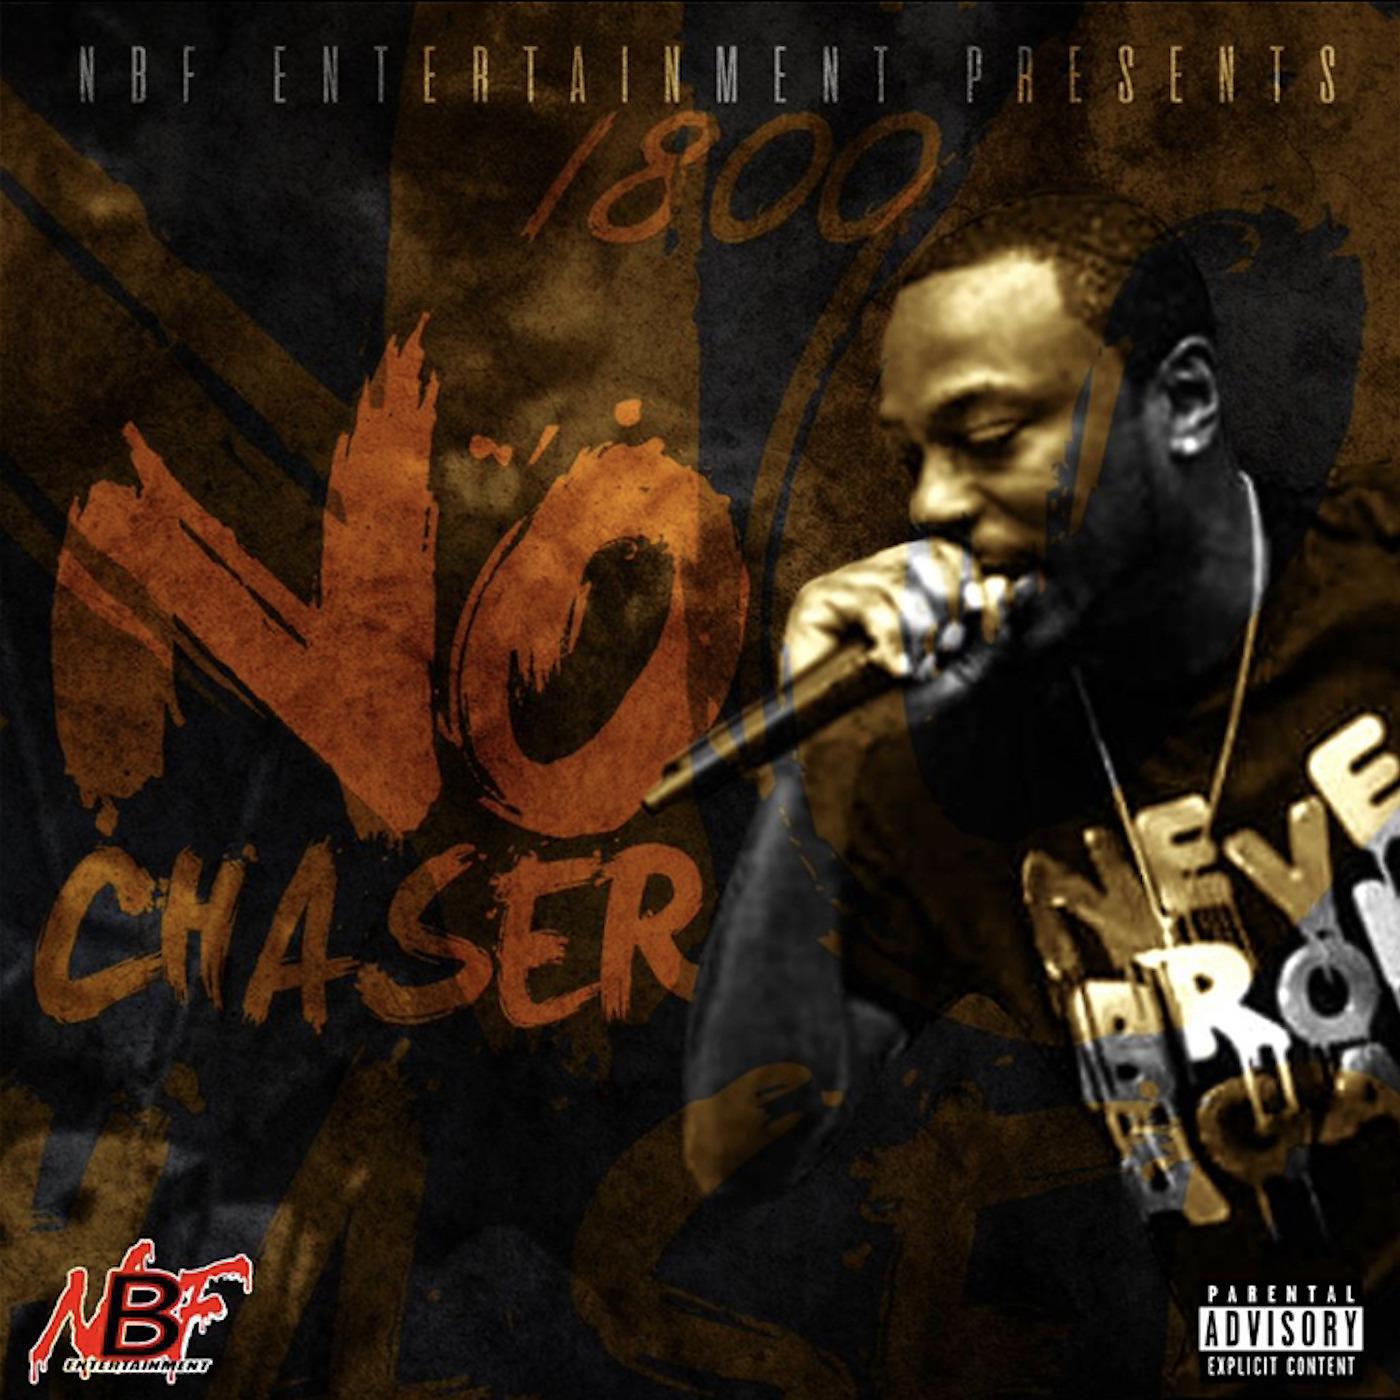 Постер альбома No Chaser